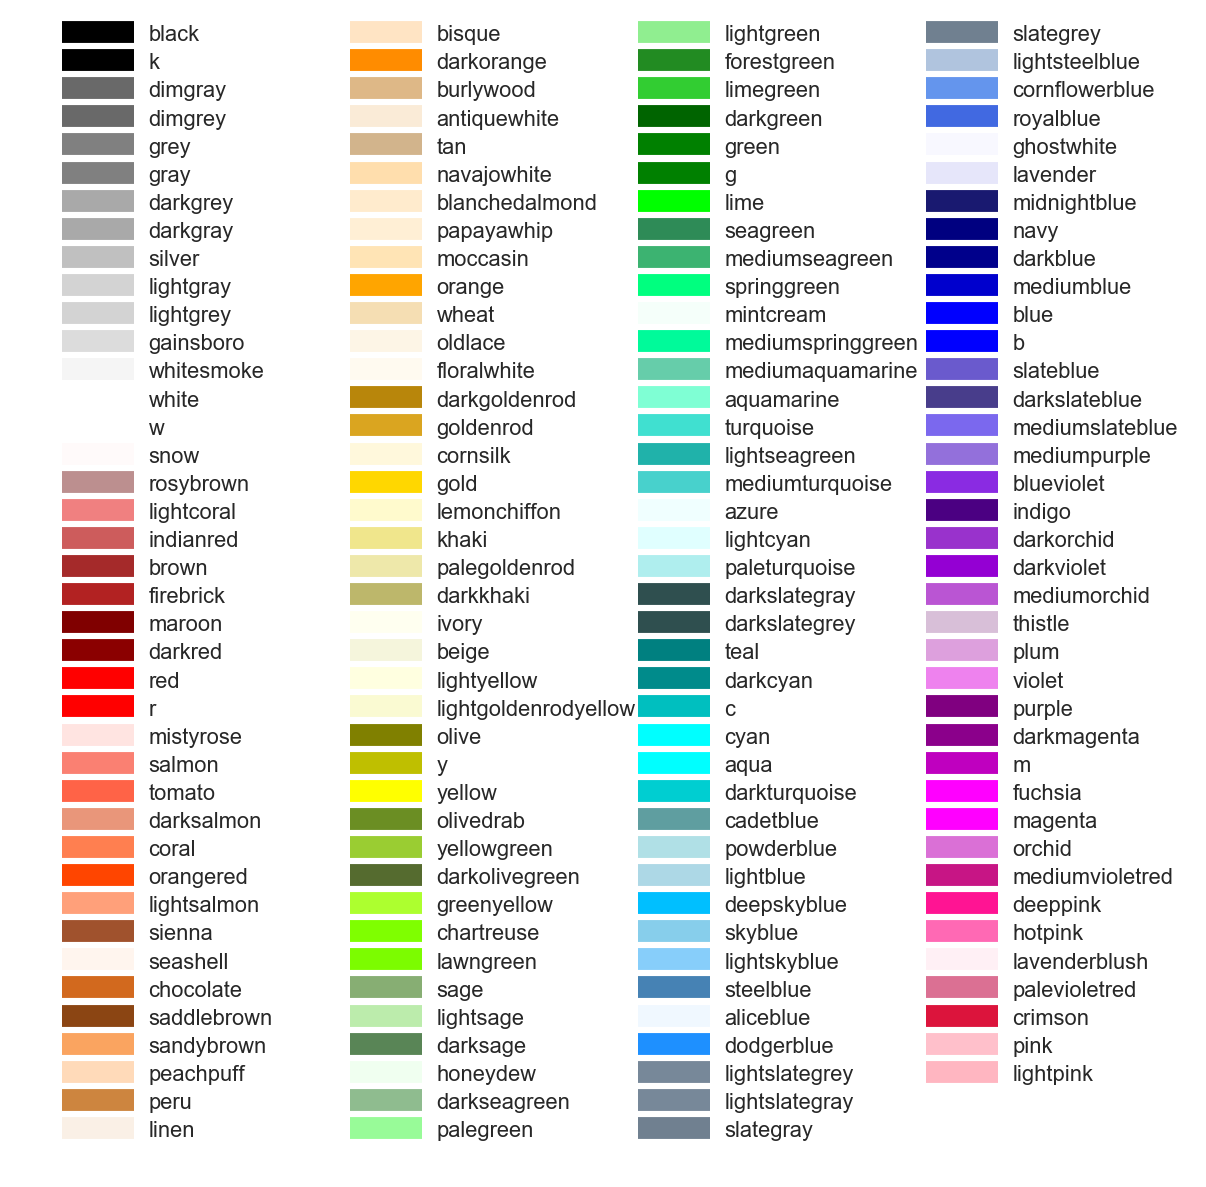 matplotlib中color可用的颜色